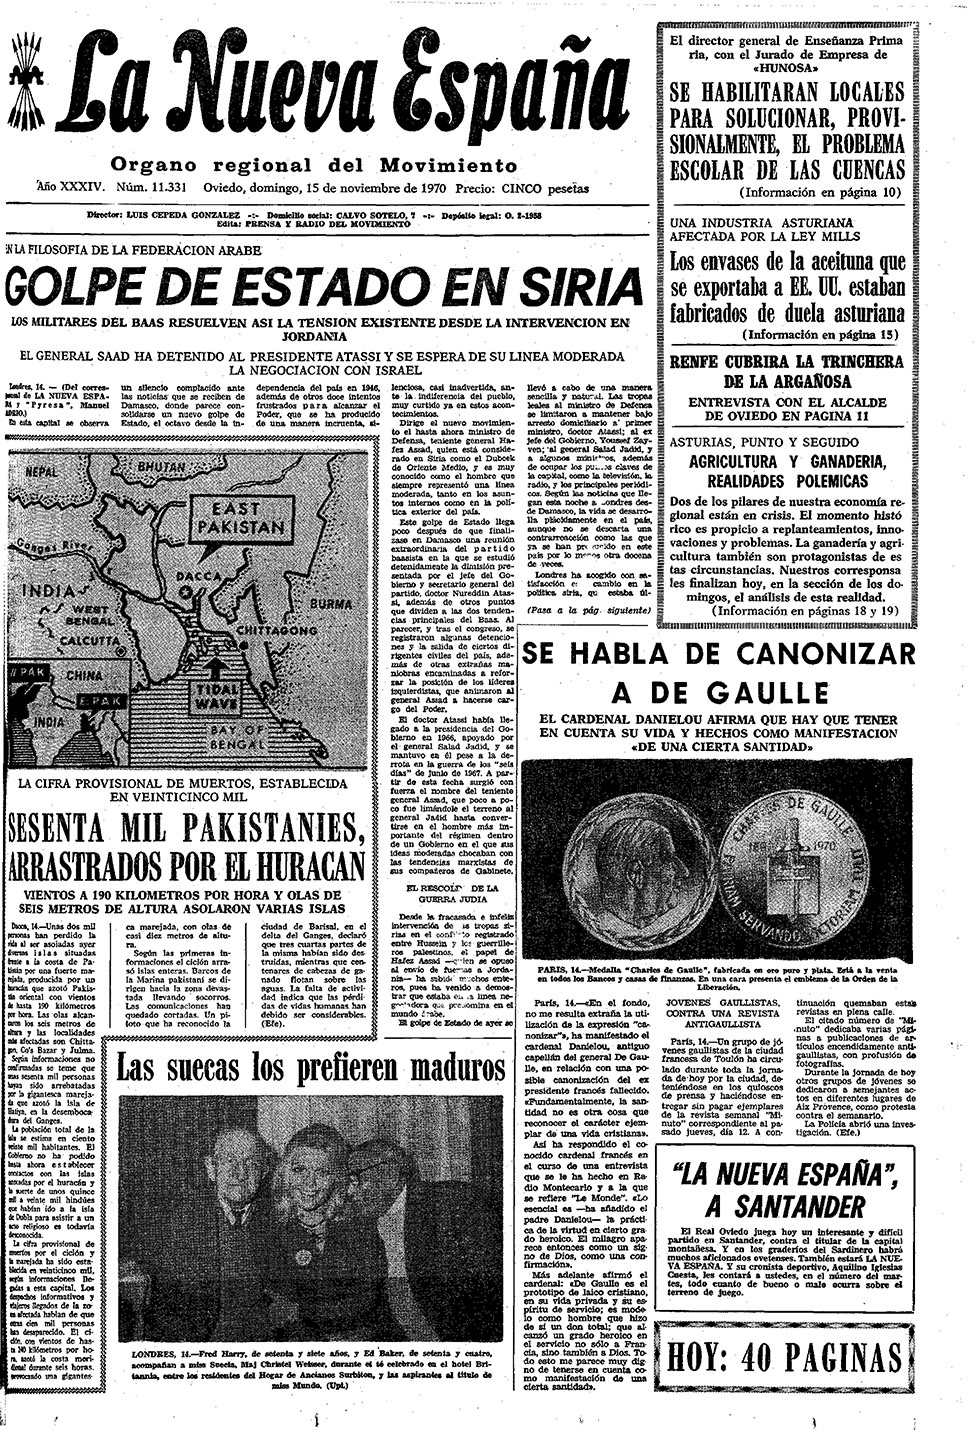 Portada del Domingo, 15 de Noviembre de 1970